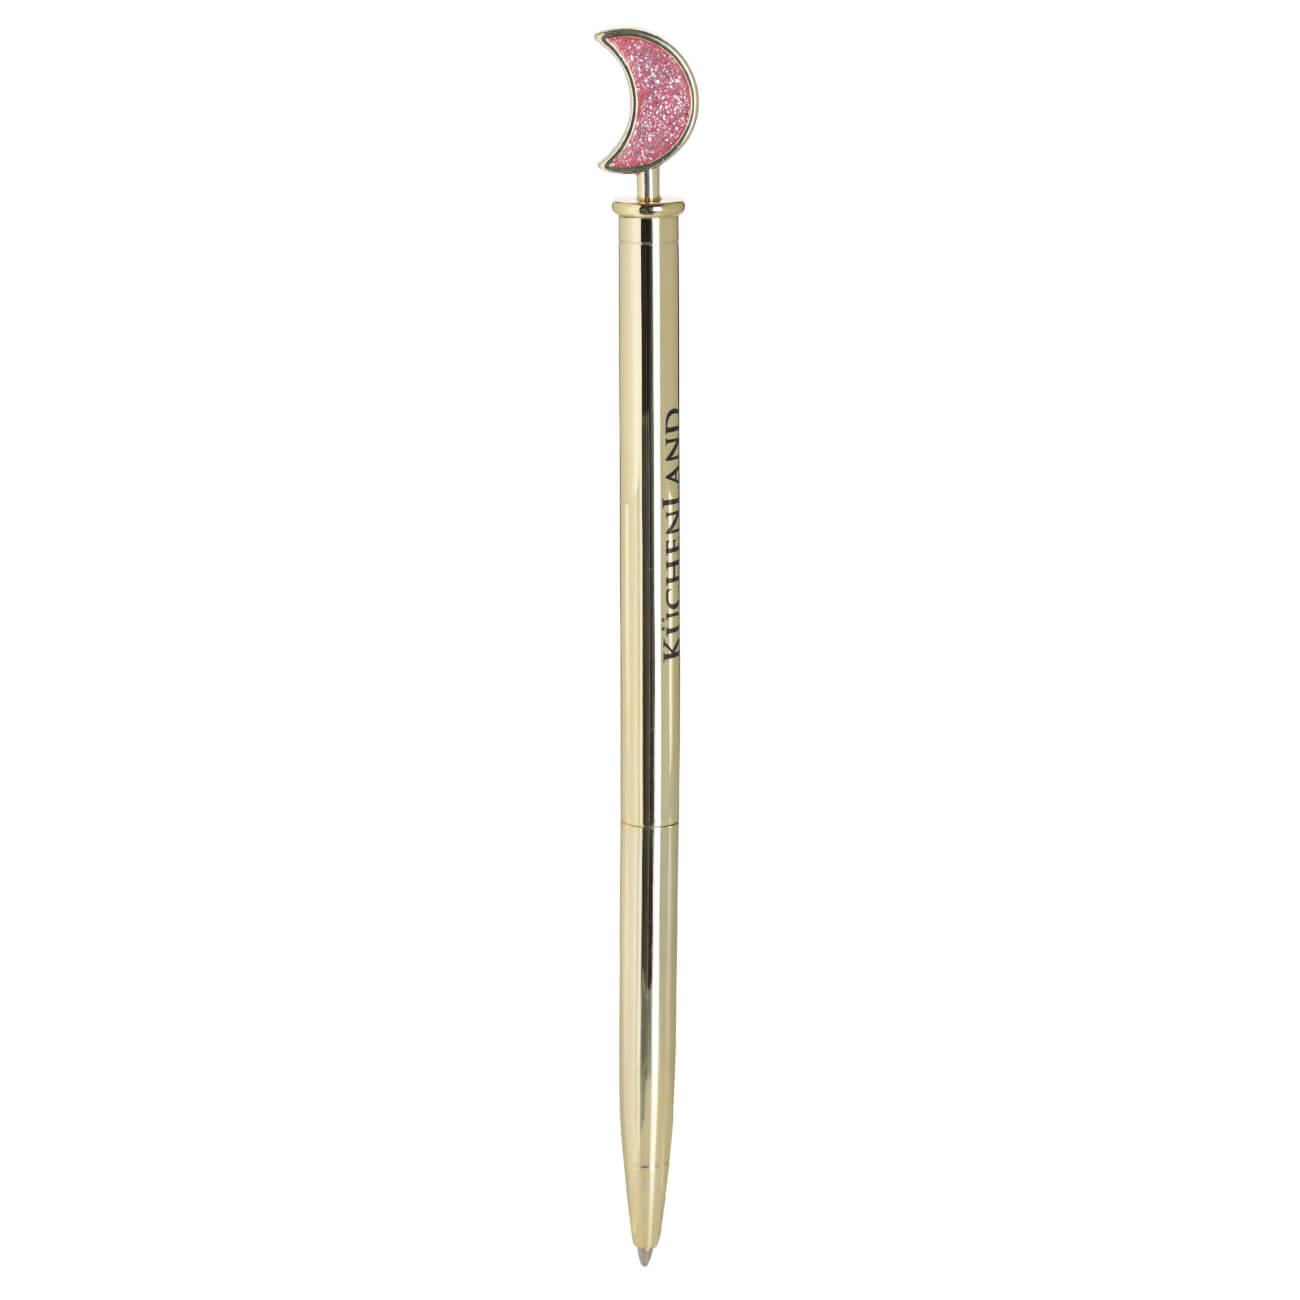 Ручка шариковая, 15 см, с фигуркой, металл, золотистая, Луна, Draw figure